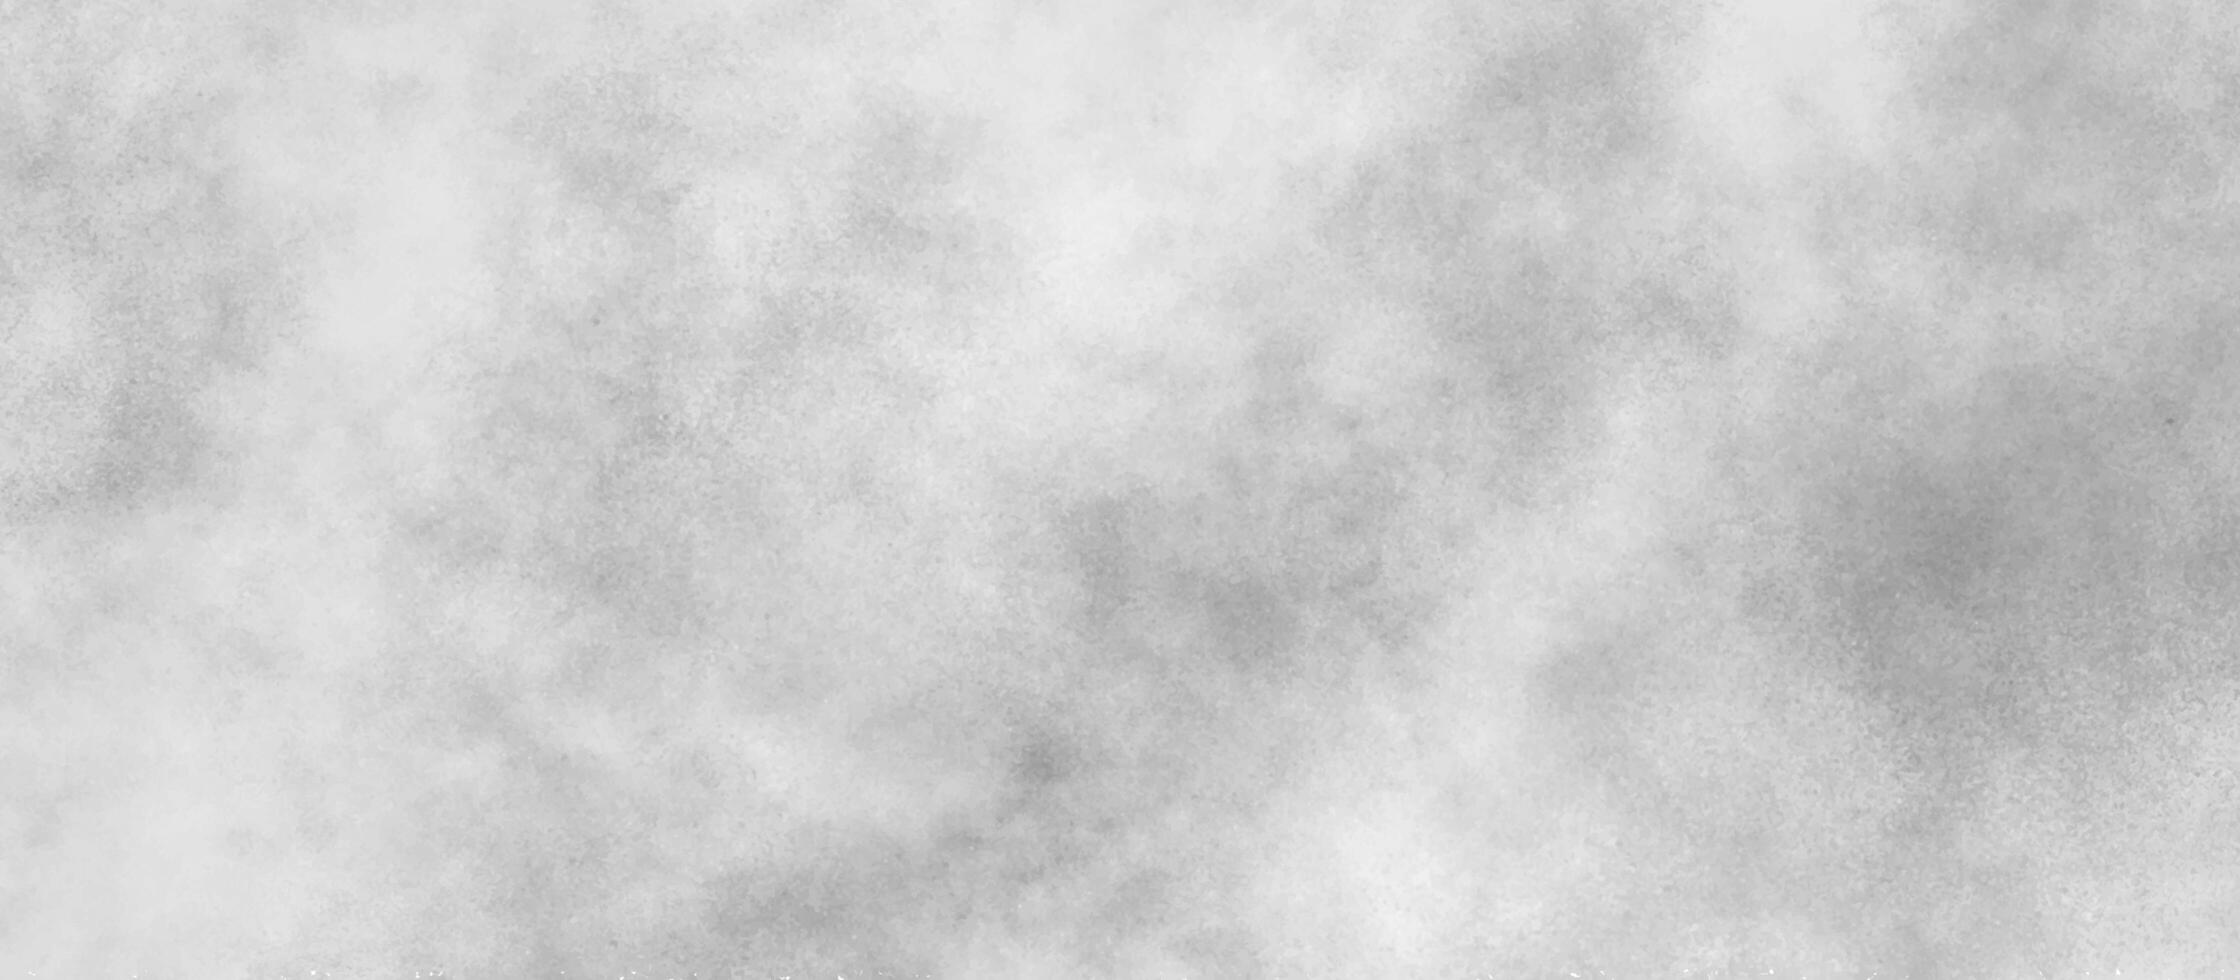 abstrakt vit och grå akvarell målad papper textur, polerad och slät borsta stroke grunge textur, molnig snö textur bakgrund, vit vattenfärg målning illustration. vit marmor textur. foto